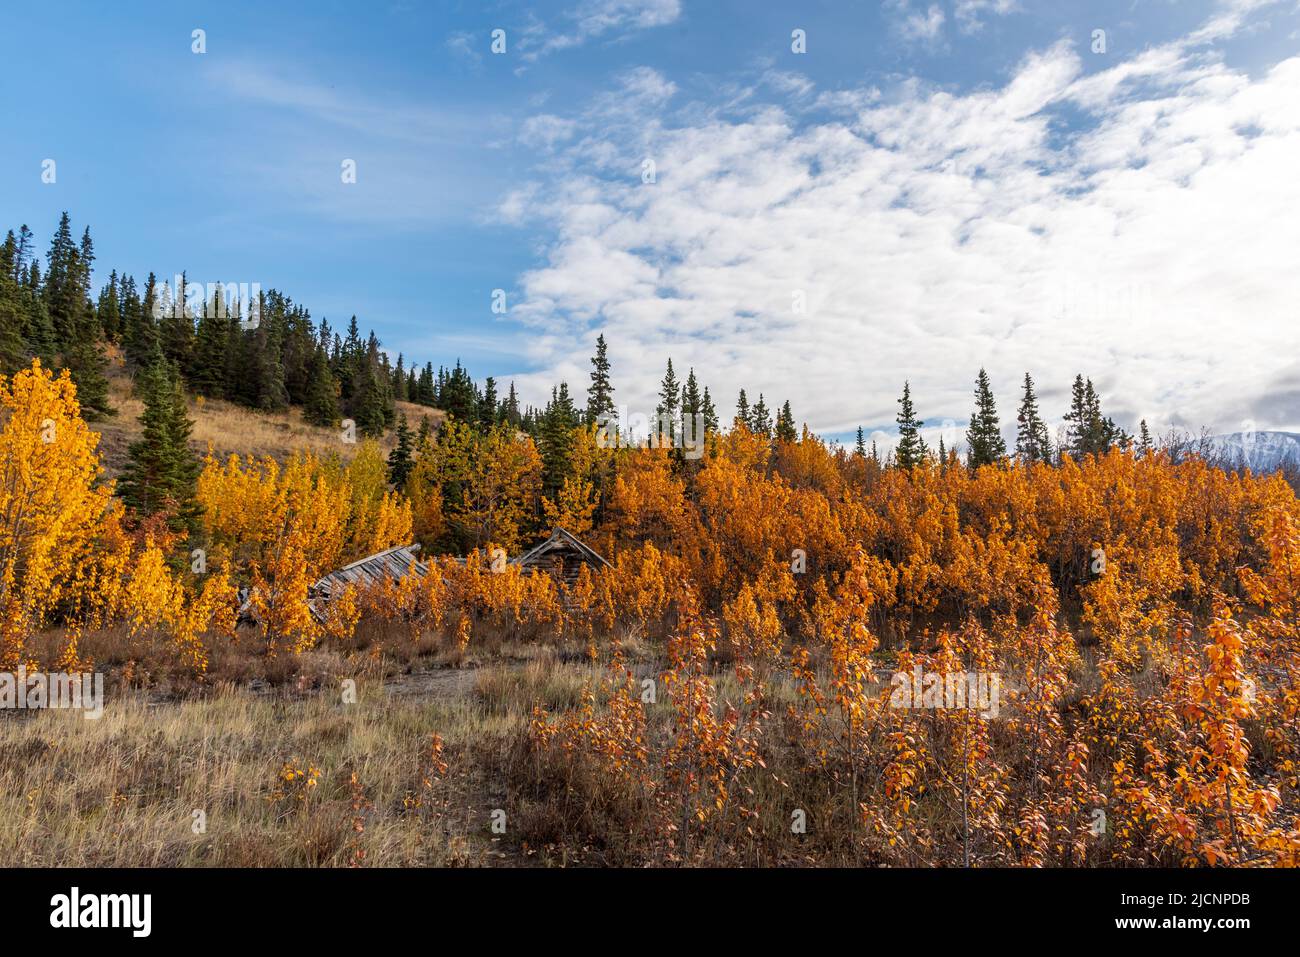 Herbstfarbener Pflanzen in einer goldenen Landschaft aus dem Yukon Territory im Norden Kanadas im September, der Herbstsaison. Stockfoto